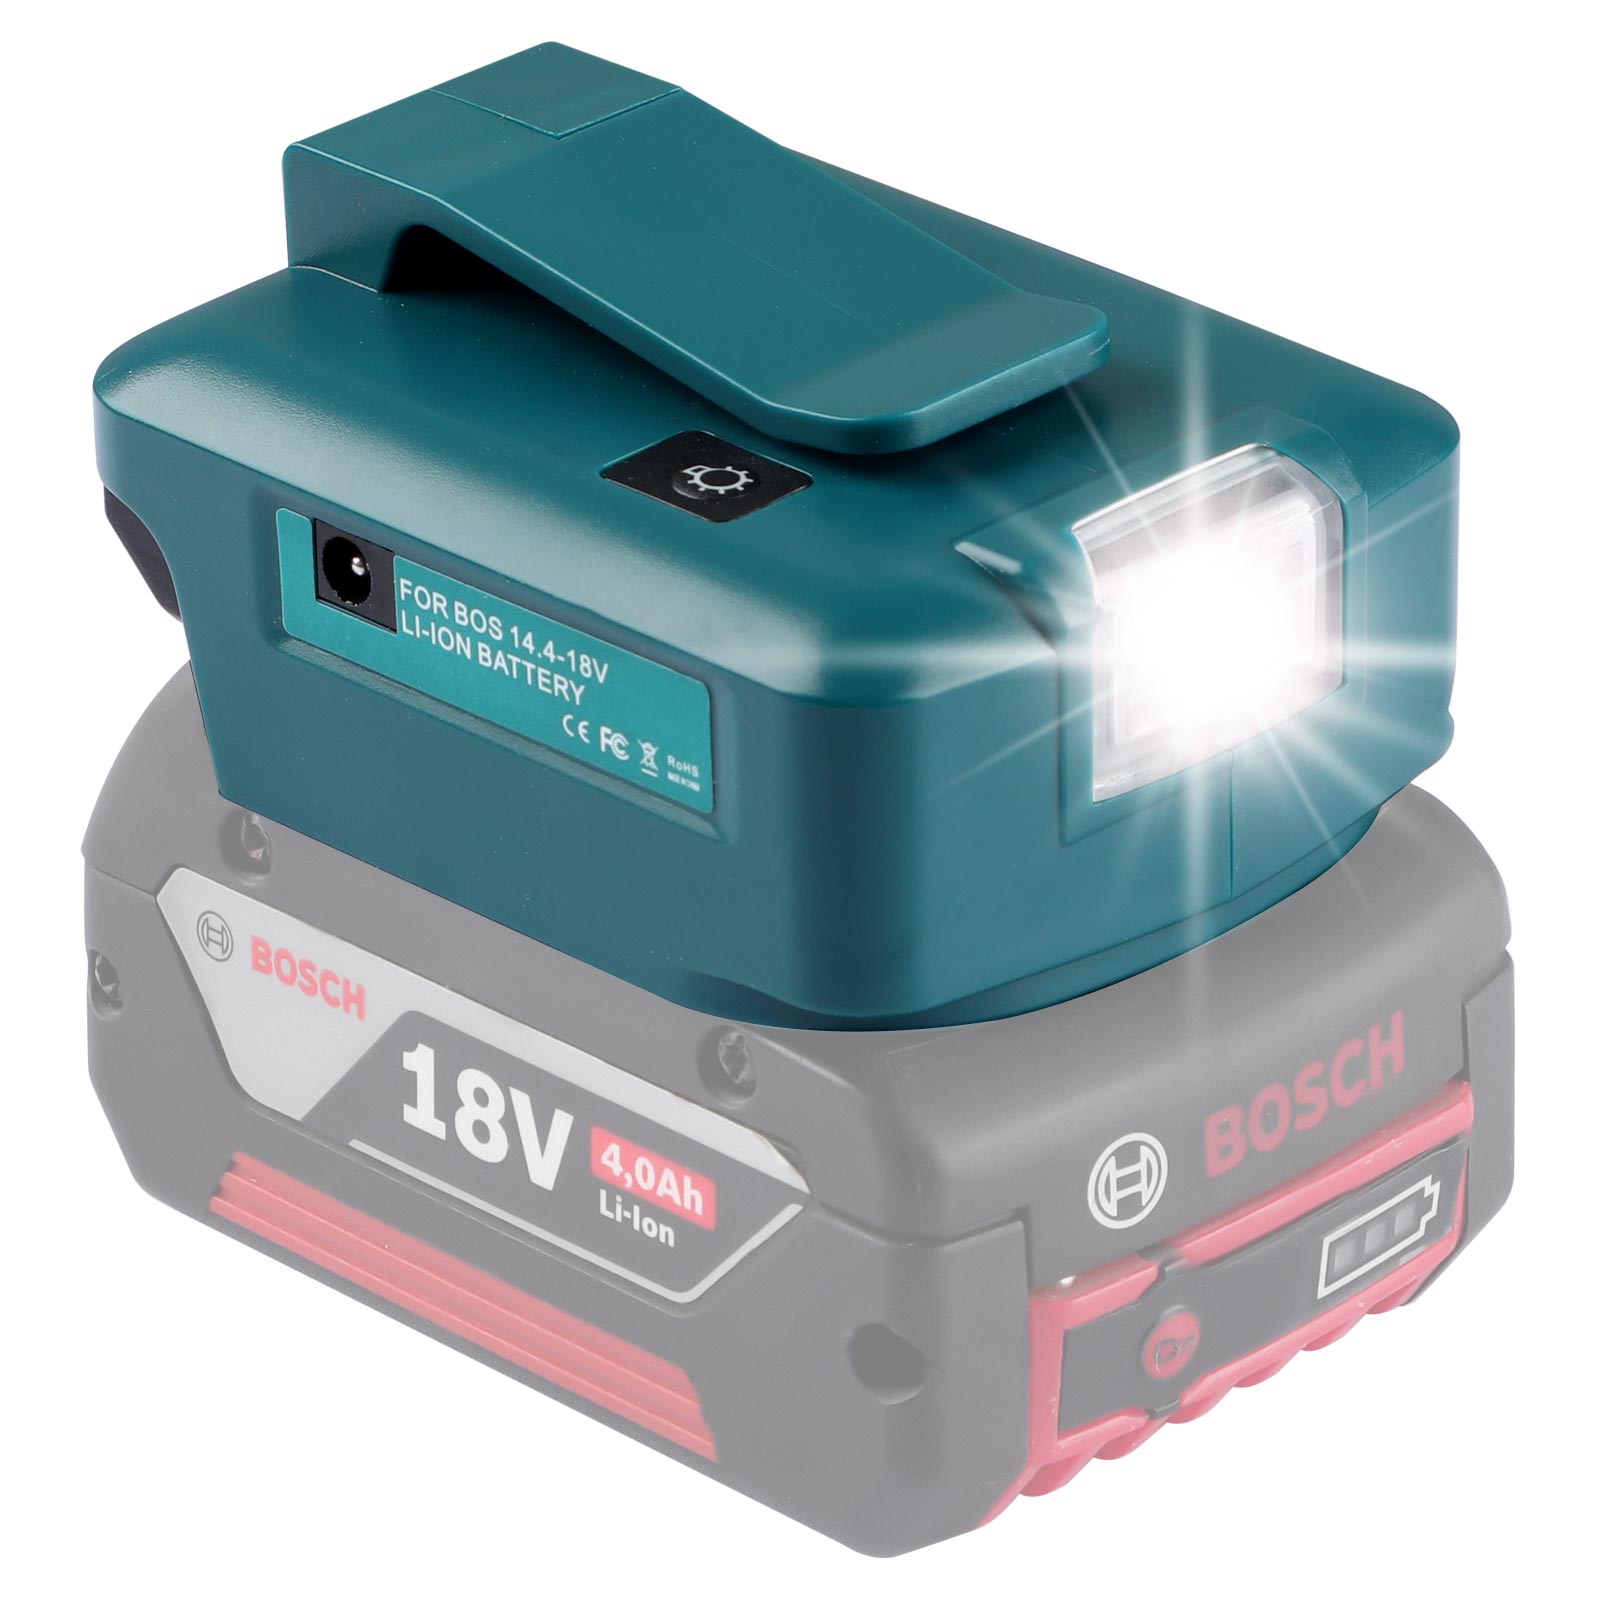 Urun մարտկոցի ադապտեր LED լույս DC պորտով և 2 USB պորտով Bosch 14.4-18V լիթիումային մարտկոցի էներգիայի աղբյուր